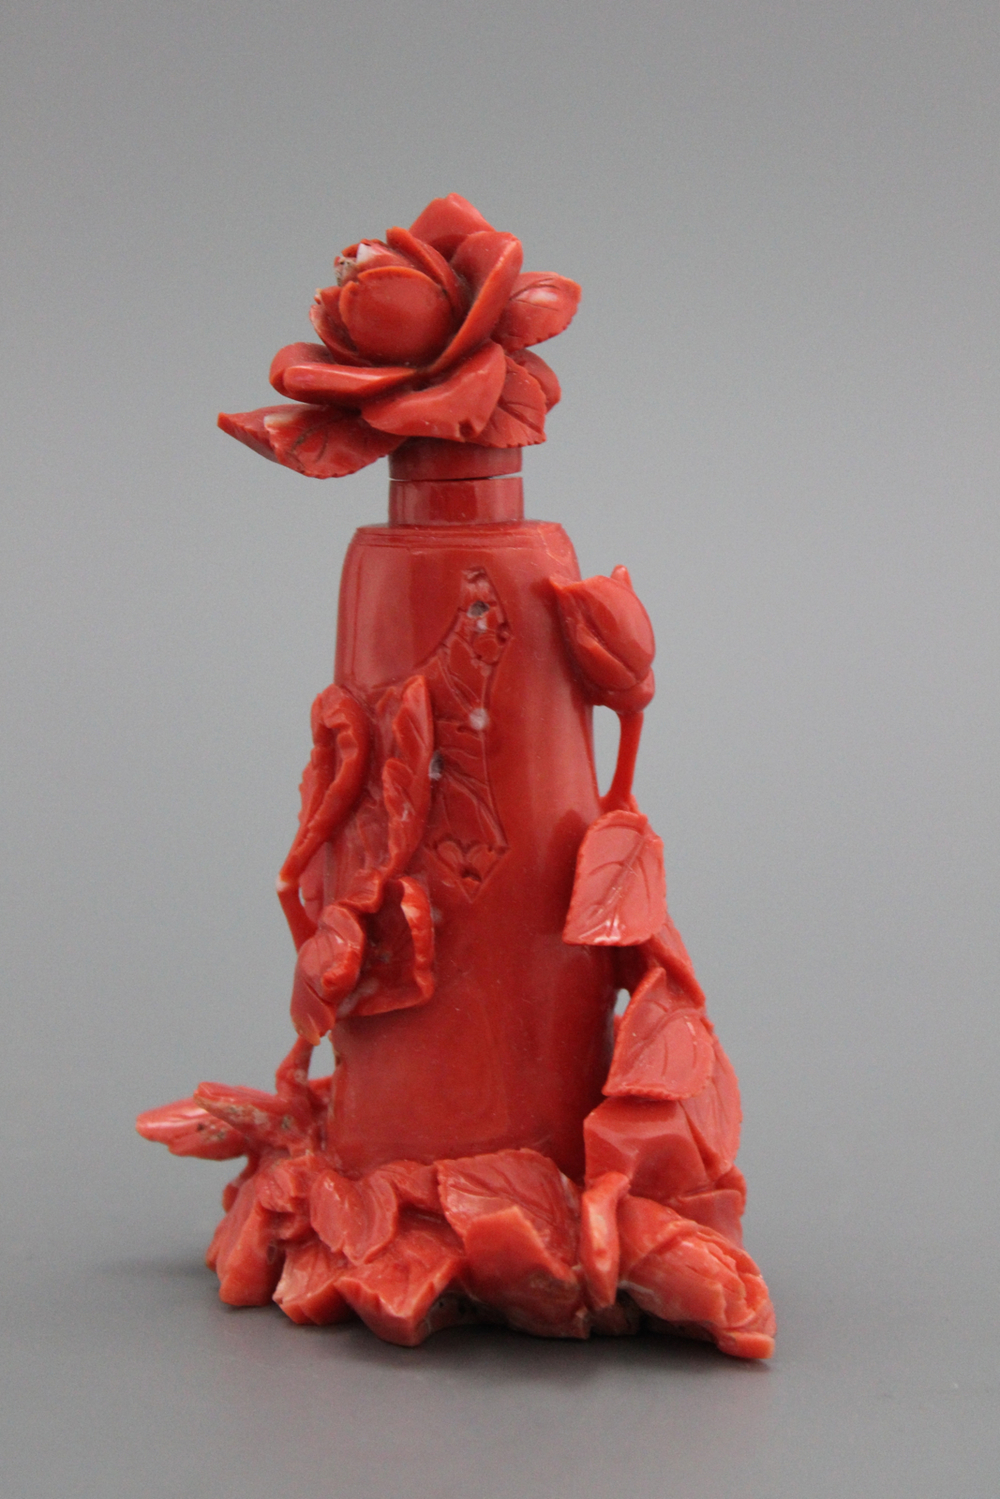 Tabati&egrave;re chinoise en corail en forme de vase fleurie, 19e